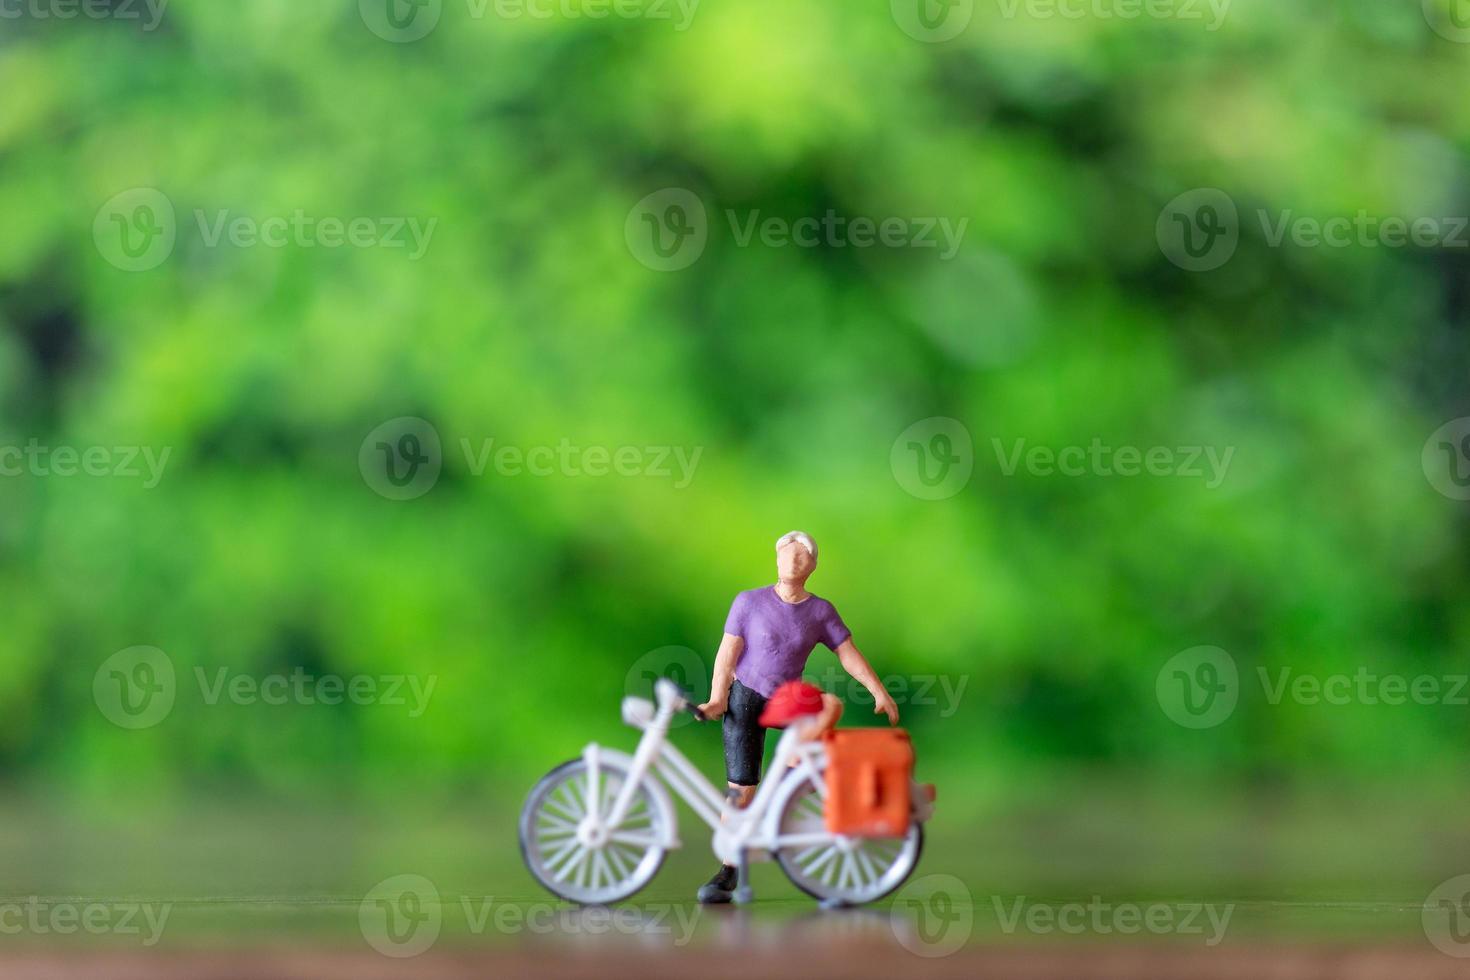 miniatyr- människor stående med cykel, värld cykel dag begrepp foto